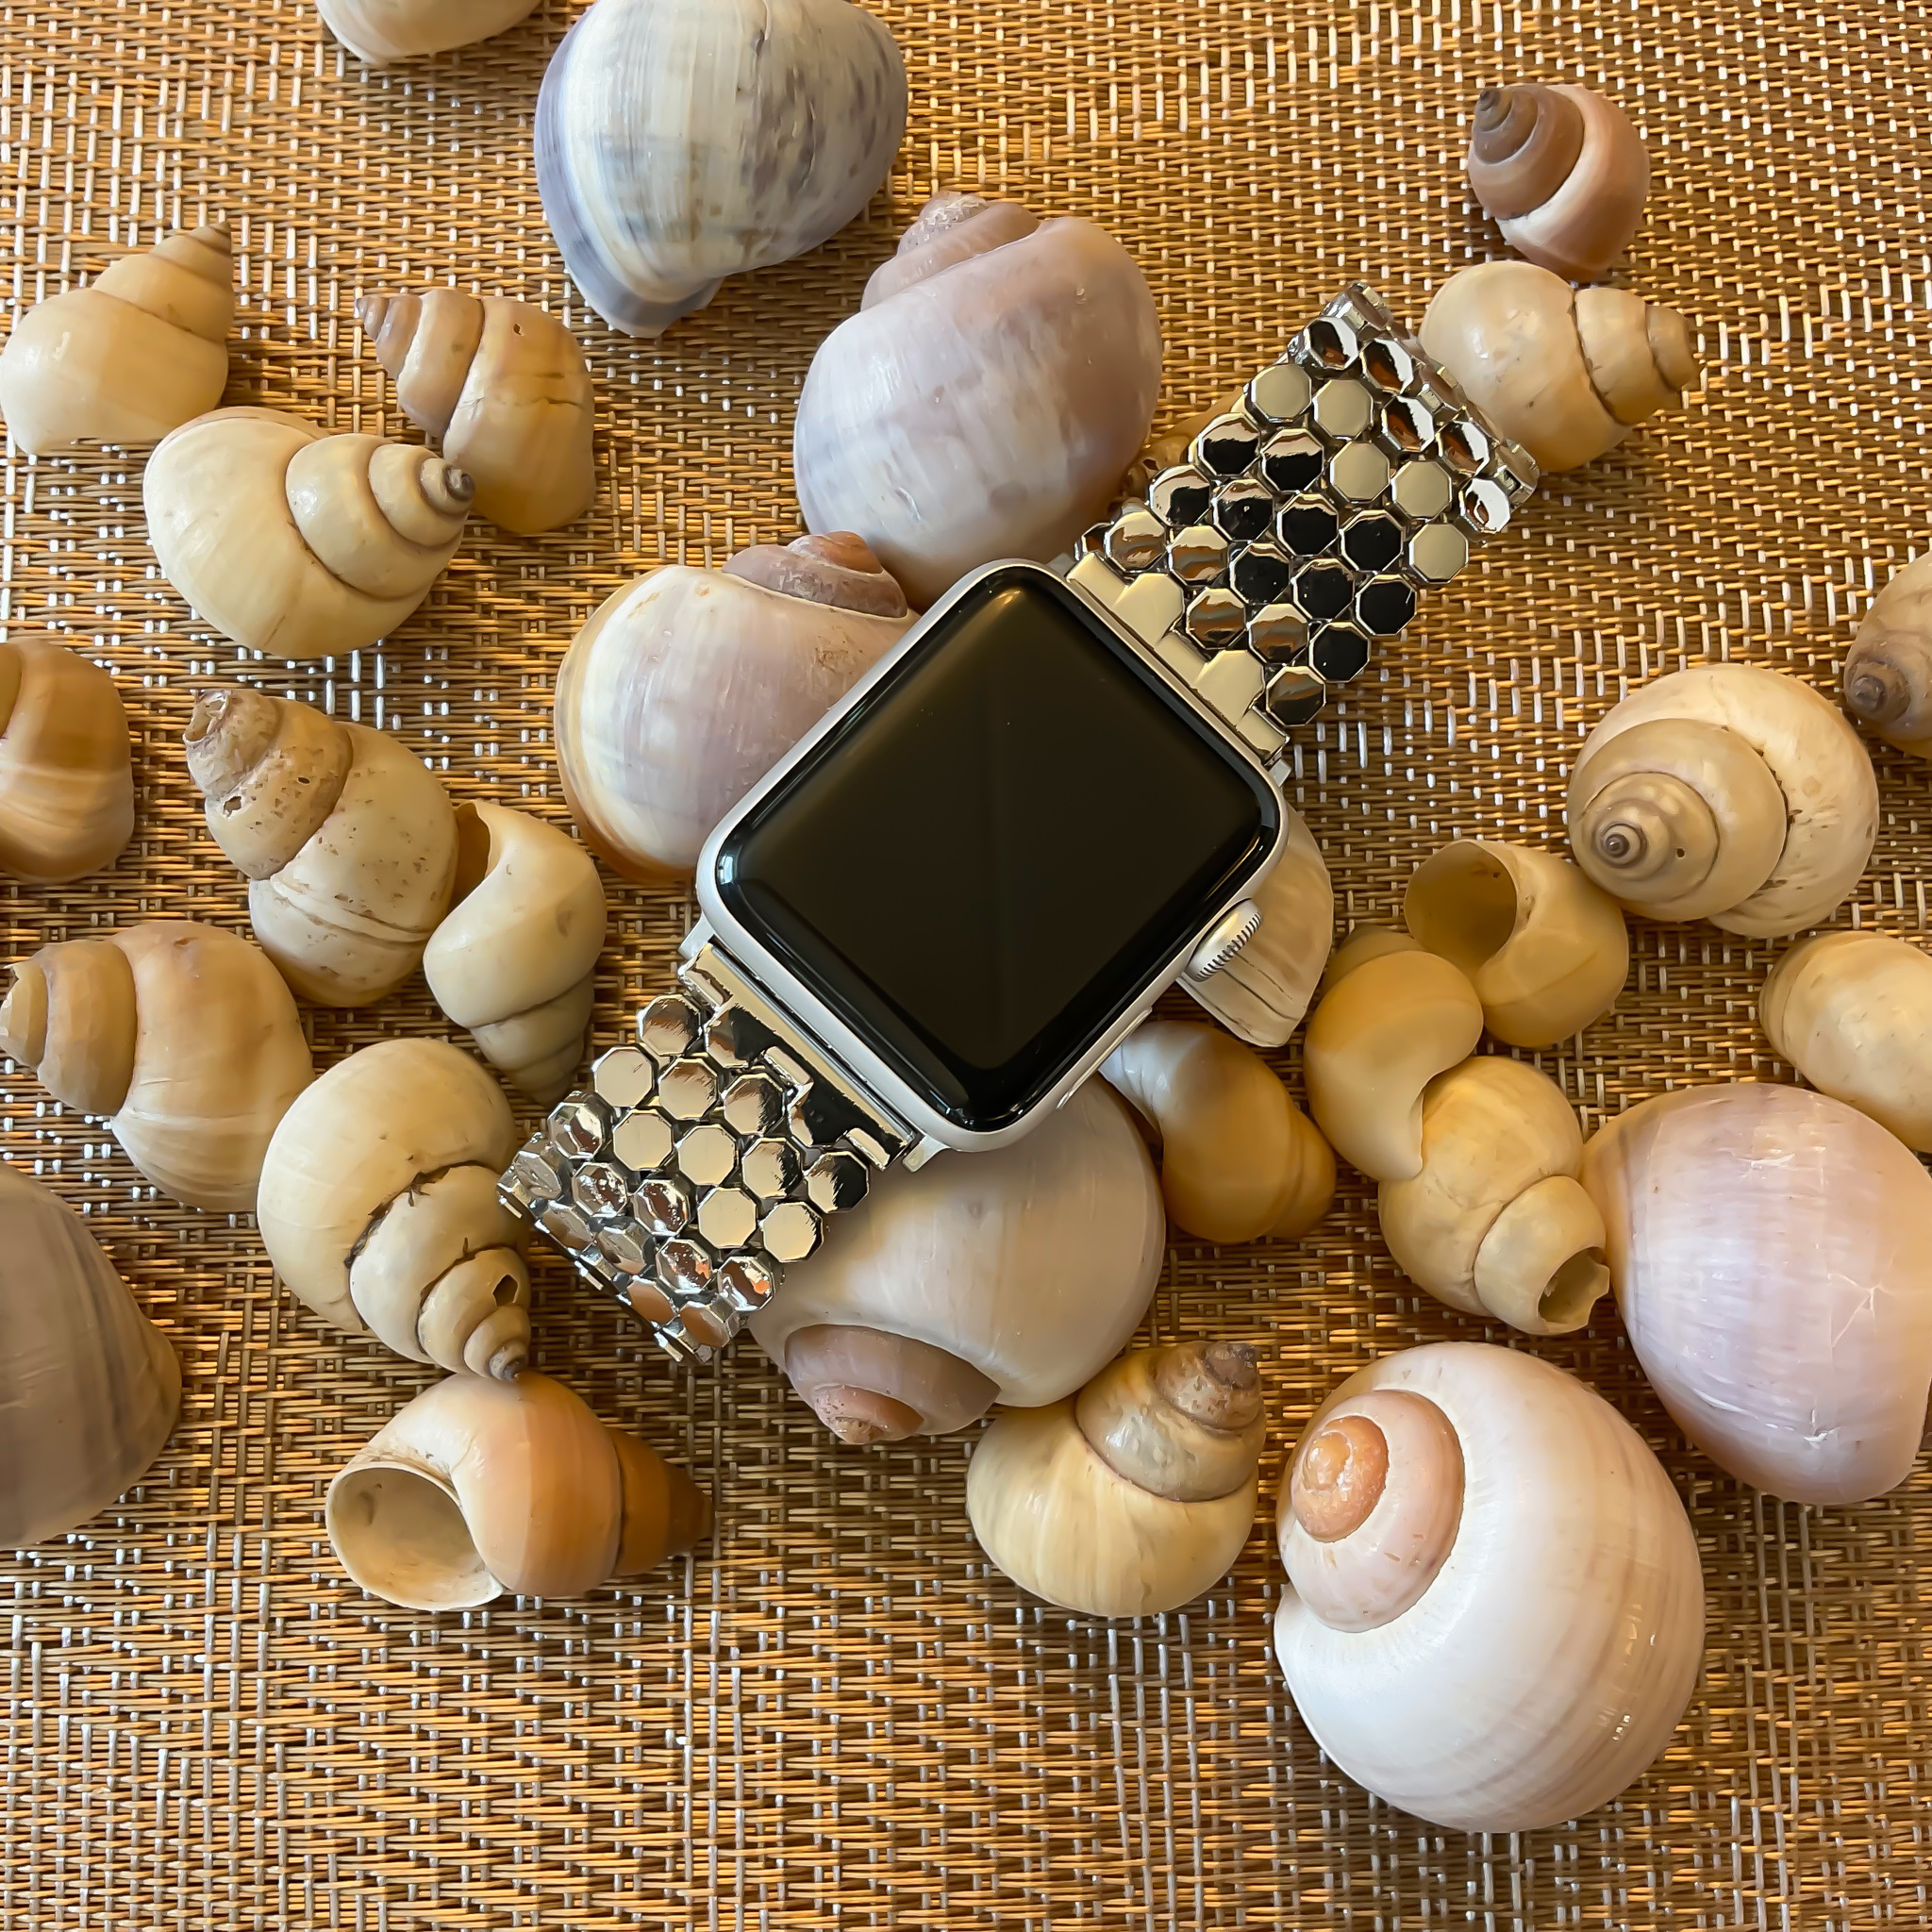 Apple Watch vis stalen schakel band - zilver